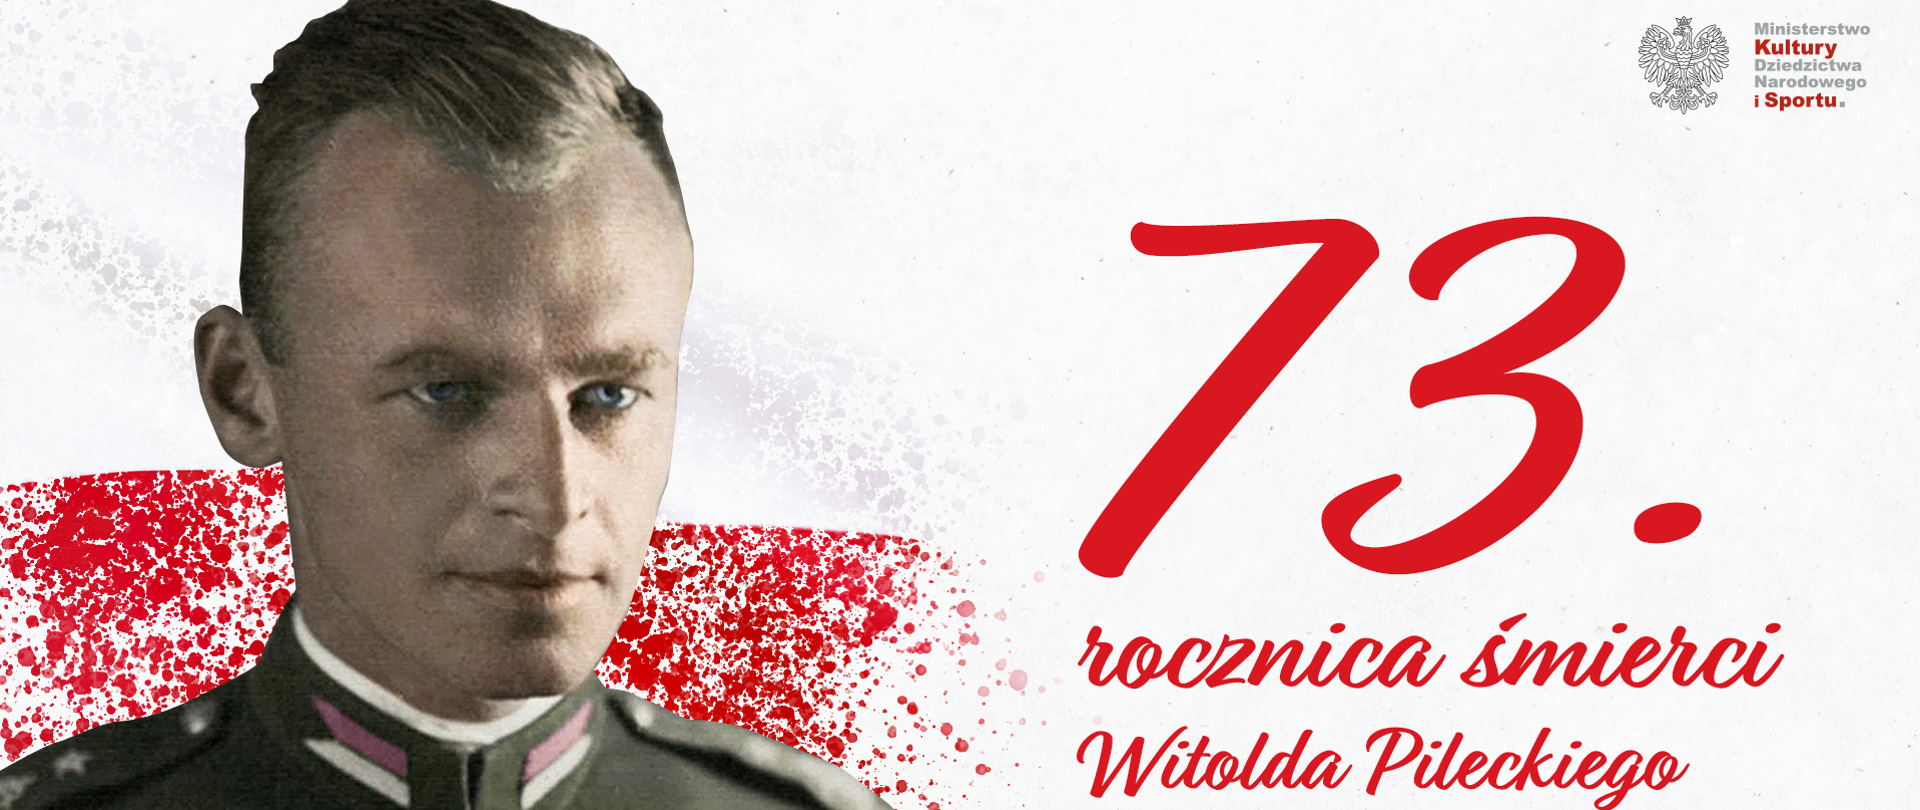 czerwony napis na białym tle: 73. rocznica śmierci Witolda Pileckiego 13.05.1901 - 25.05.1948